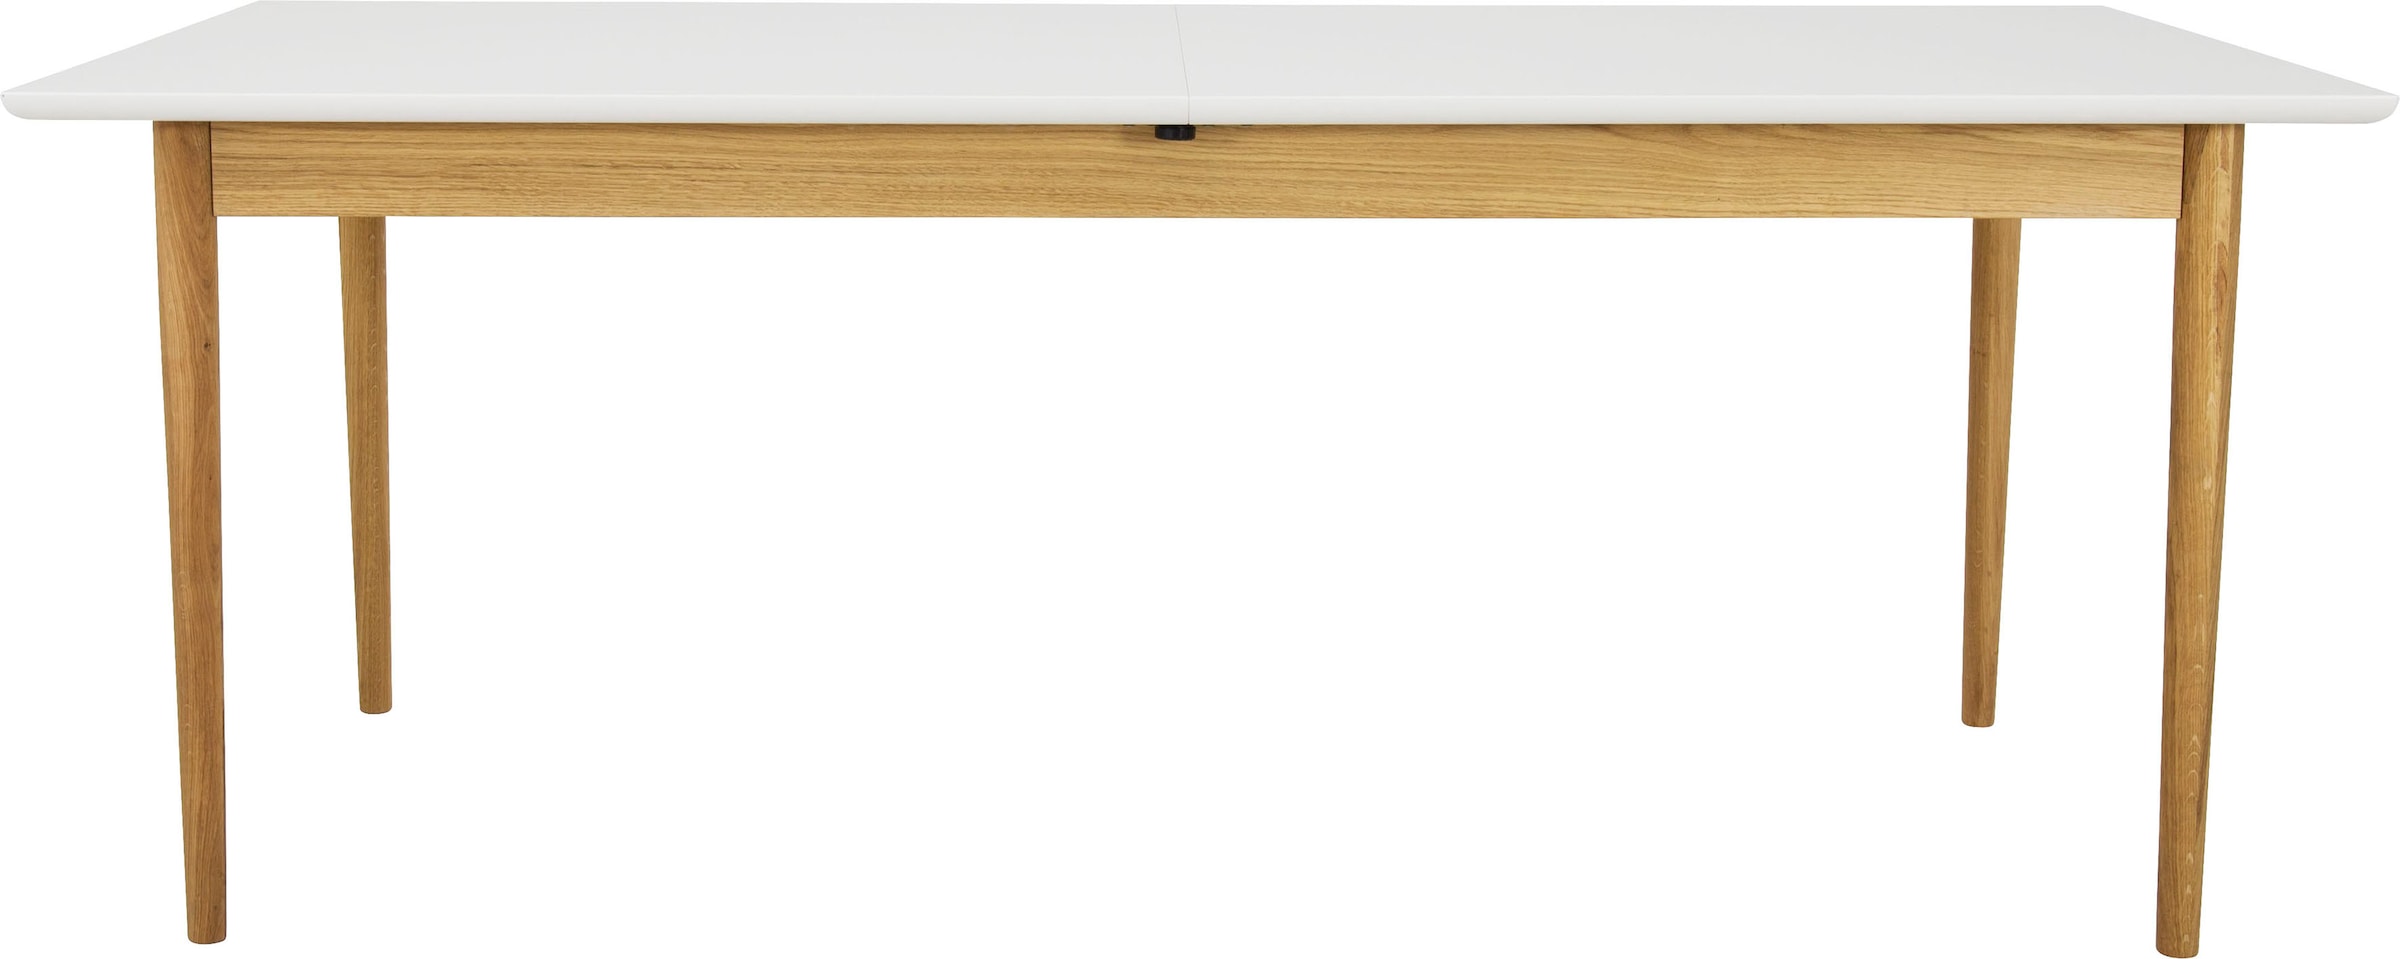 Tenzo Esstisch »SVEA«, mit Ausziehfunktion, Design von Tenzo Design studio, Breite 195/275 cm